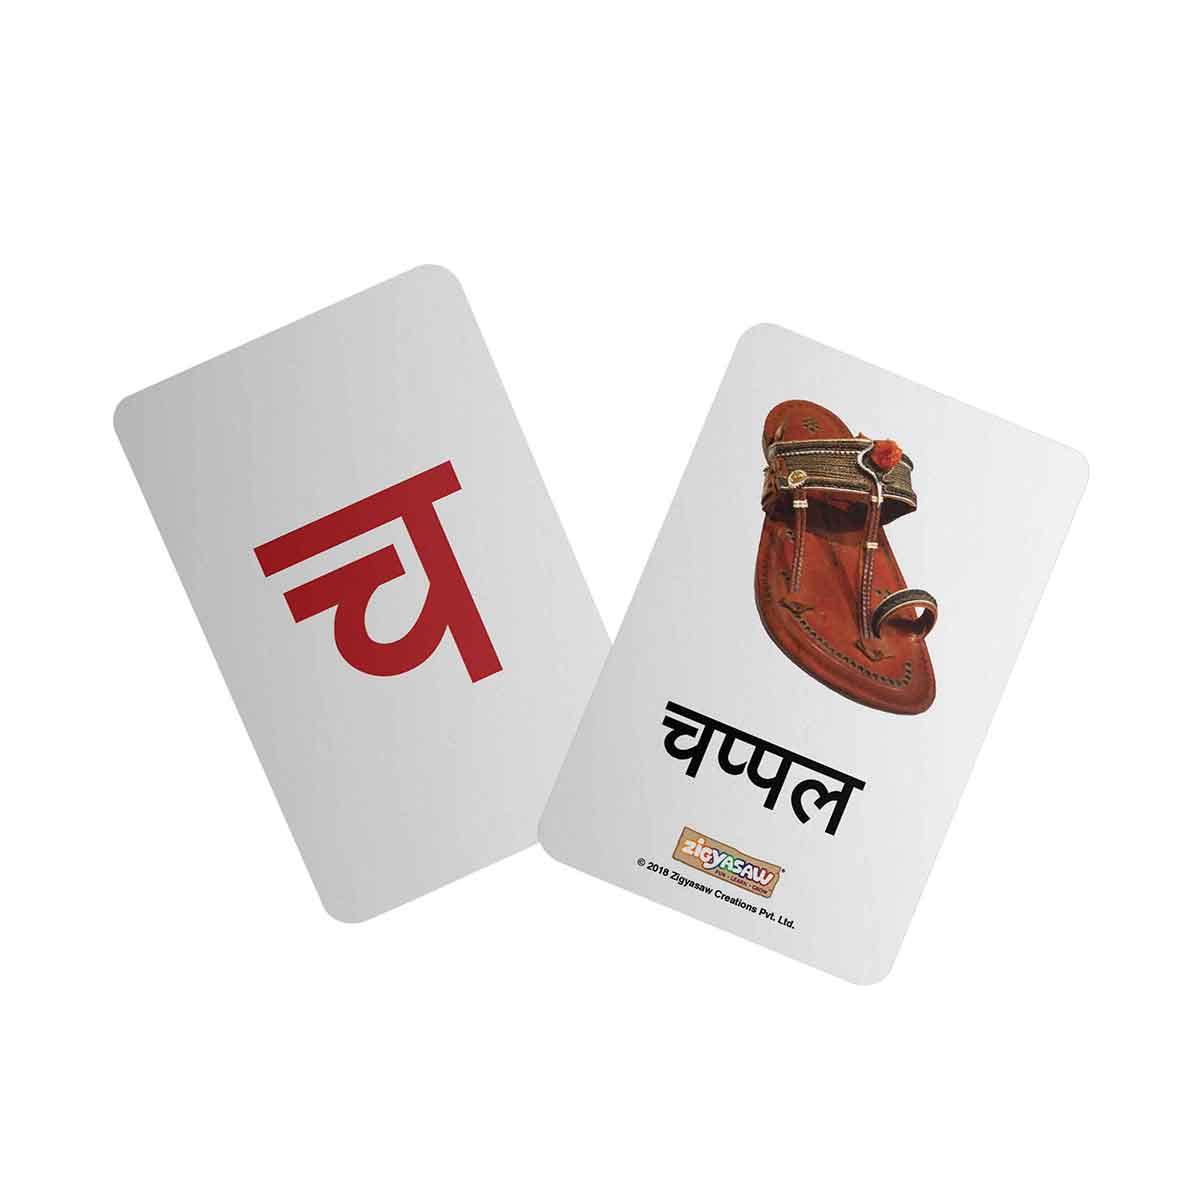 Zigyasaw Marathi Varnamala educational flash cards freeshipping - Zigyasaw